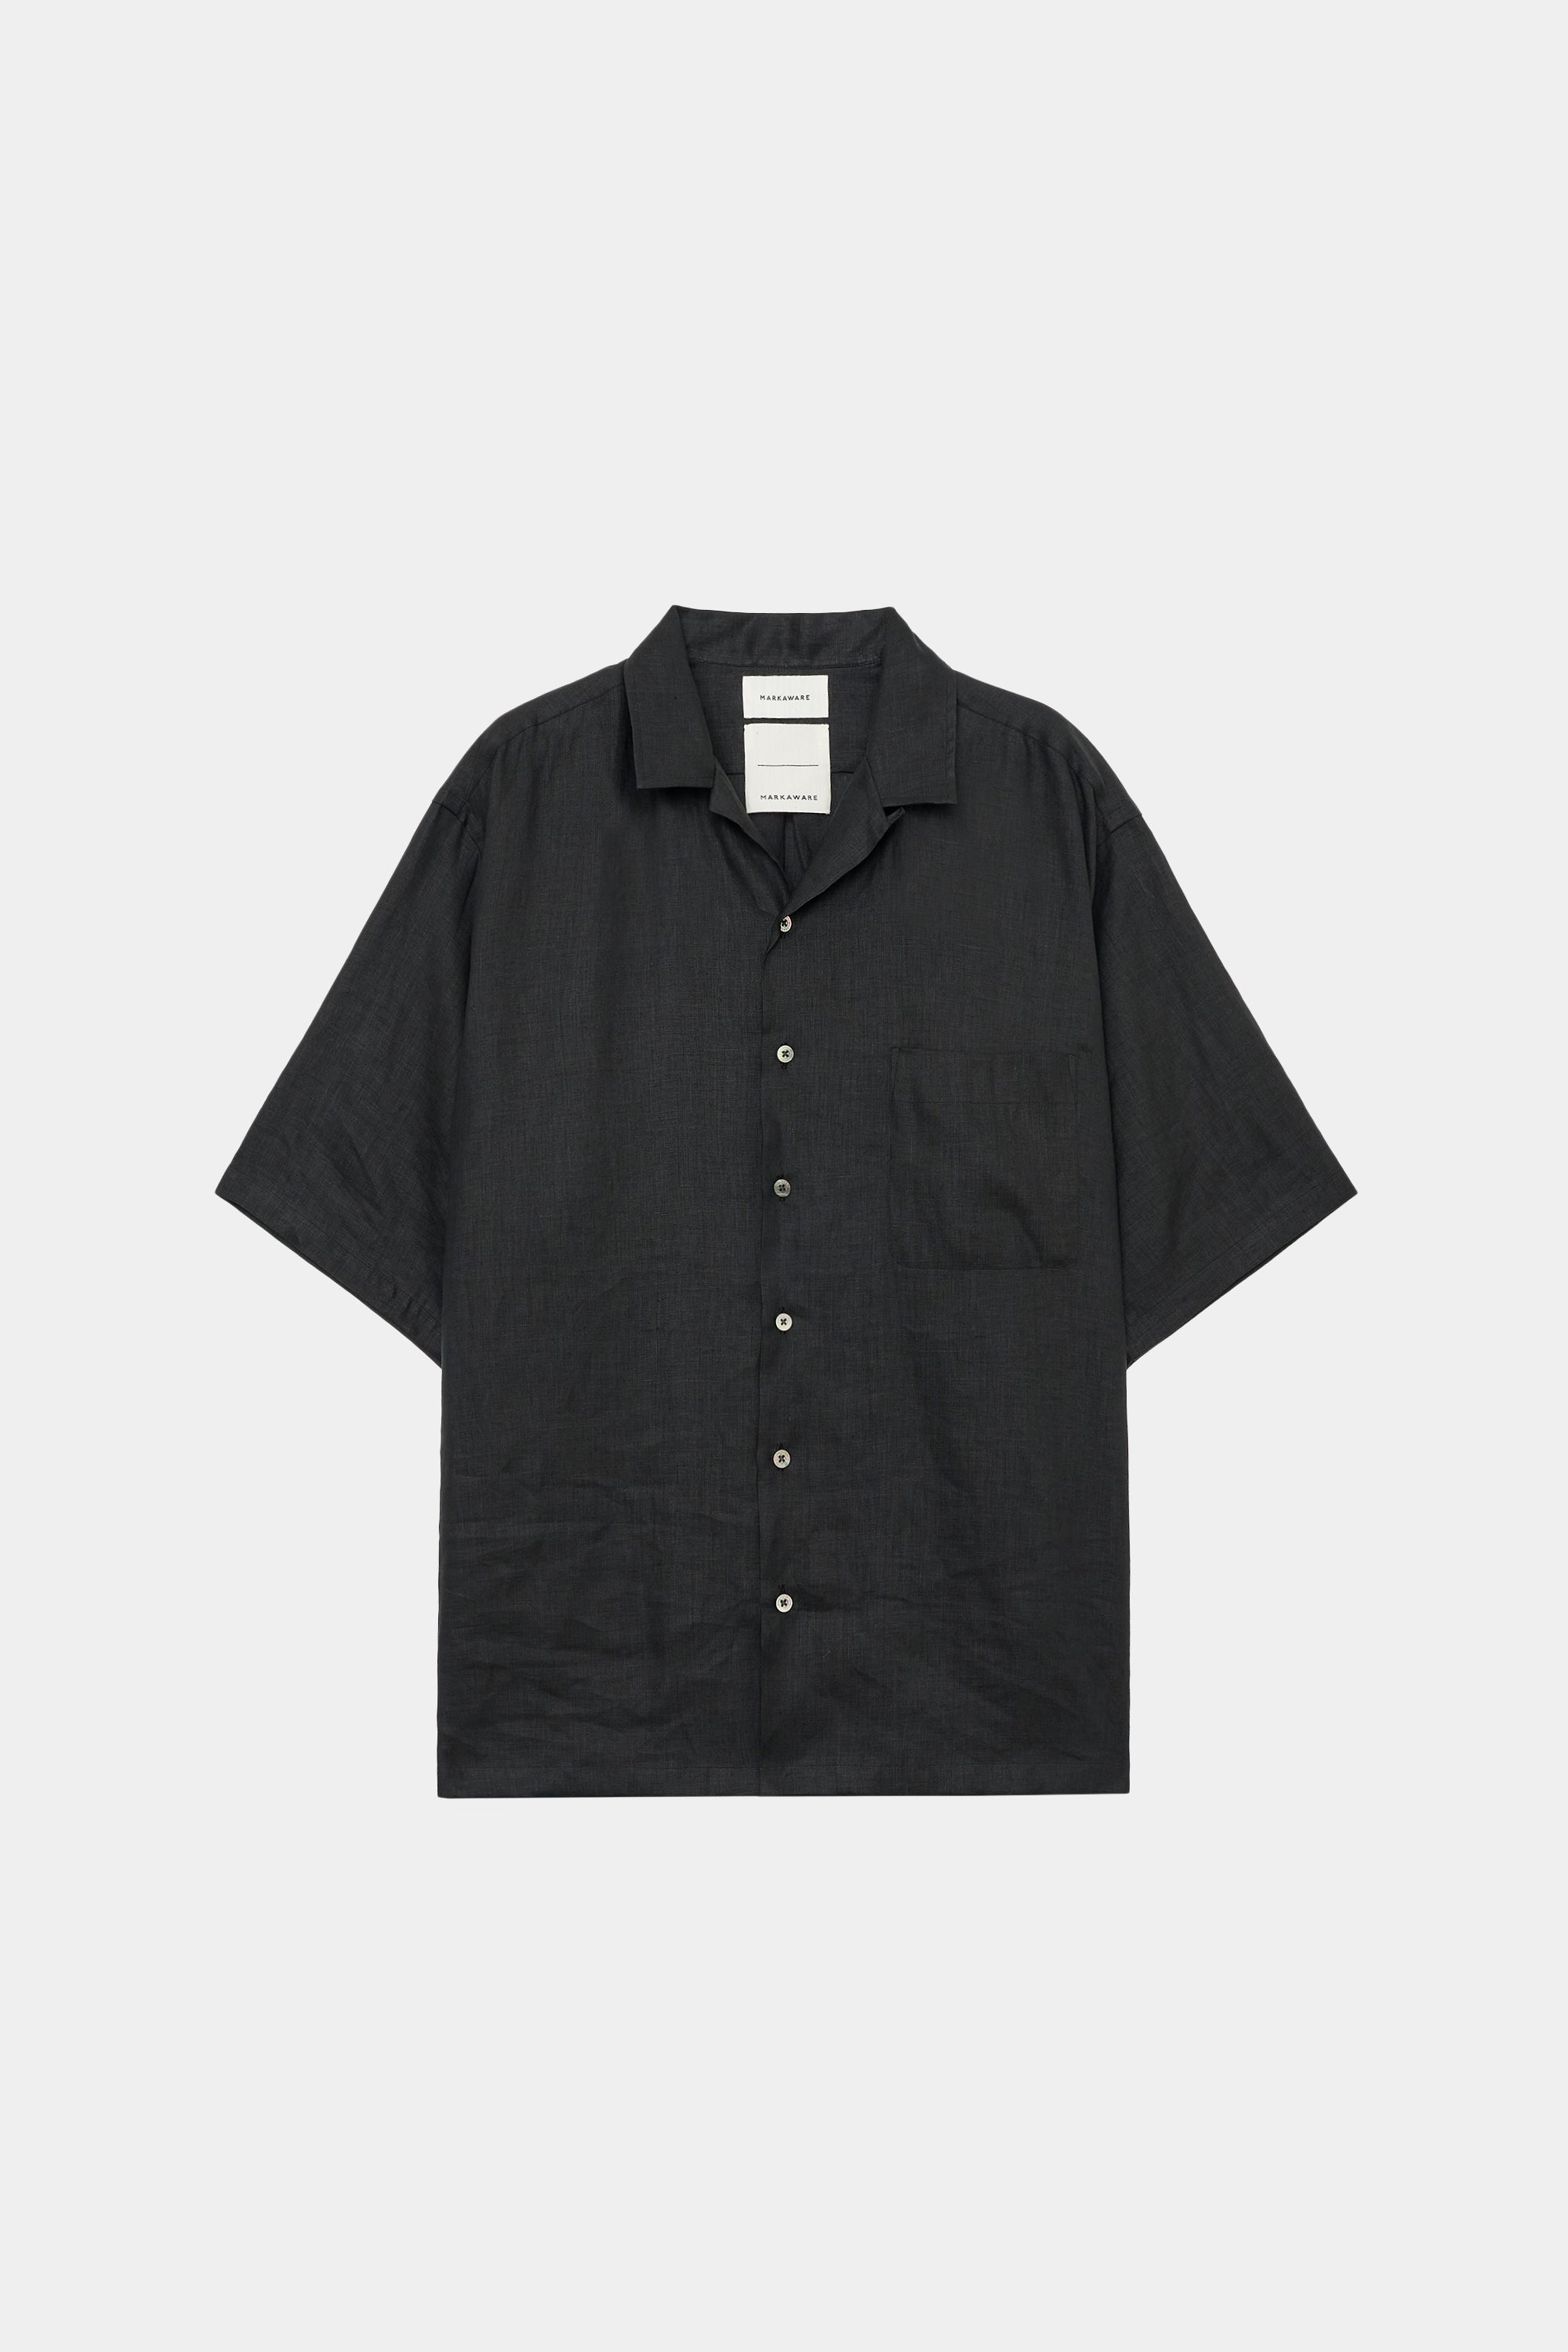 ヘンプ細布 / オープンカラーシャツ S/S, Black – MARKAWARE